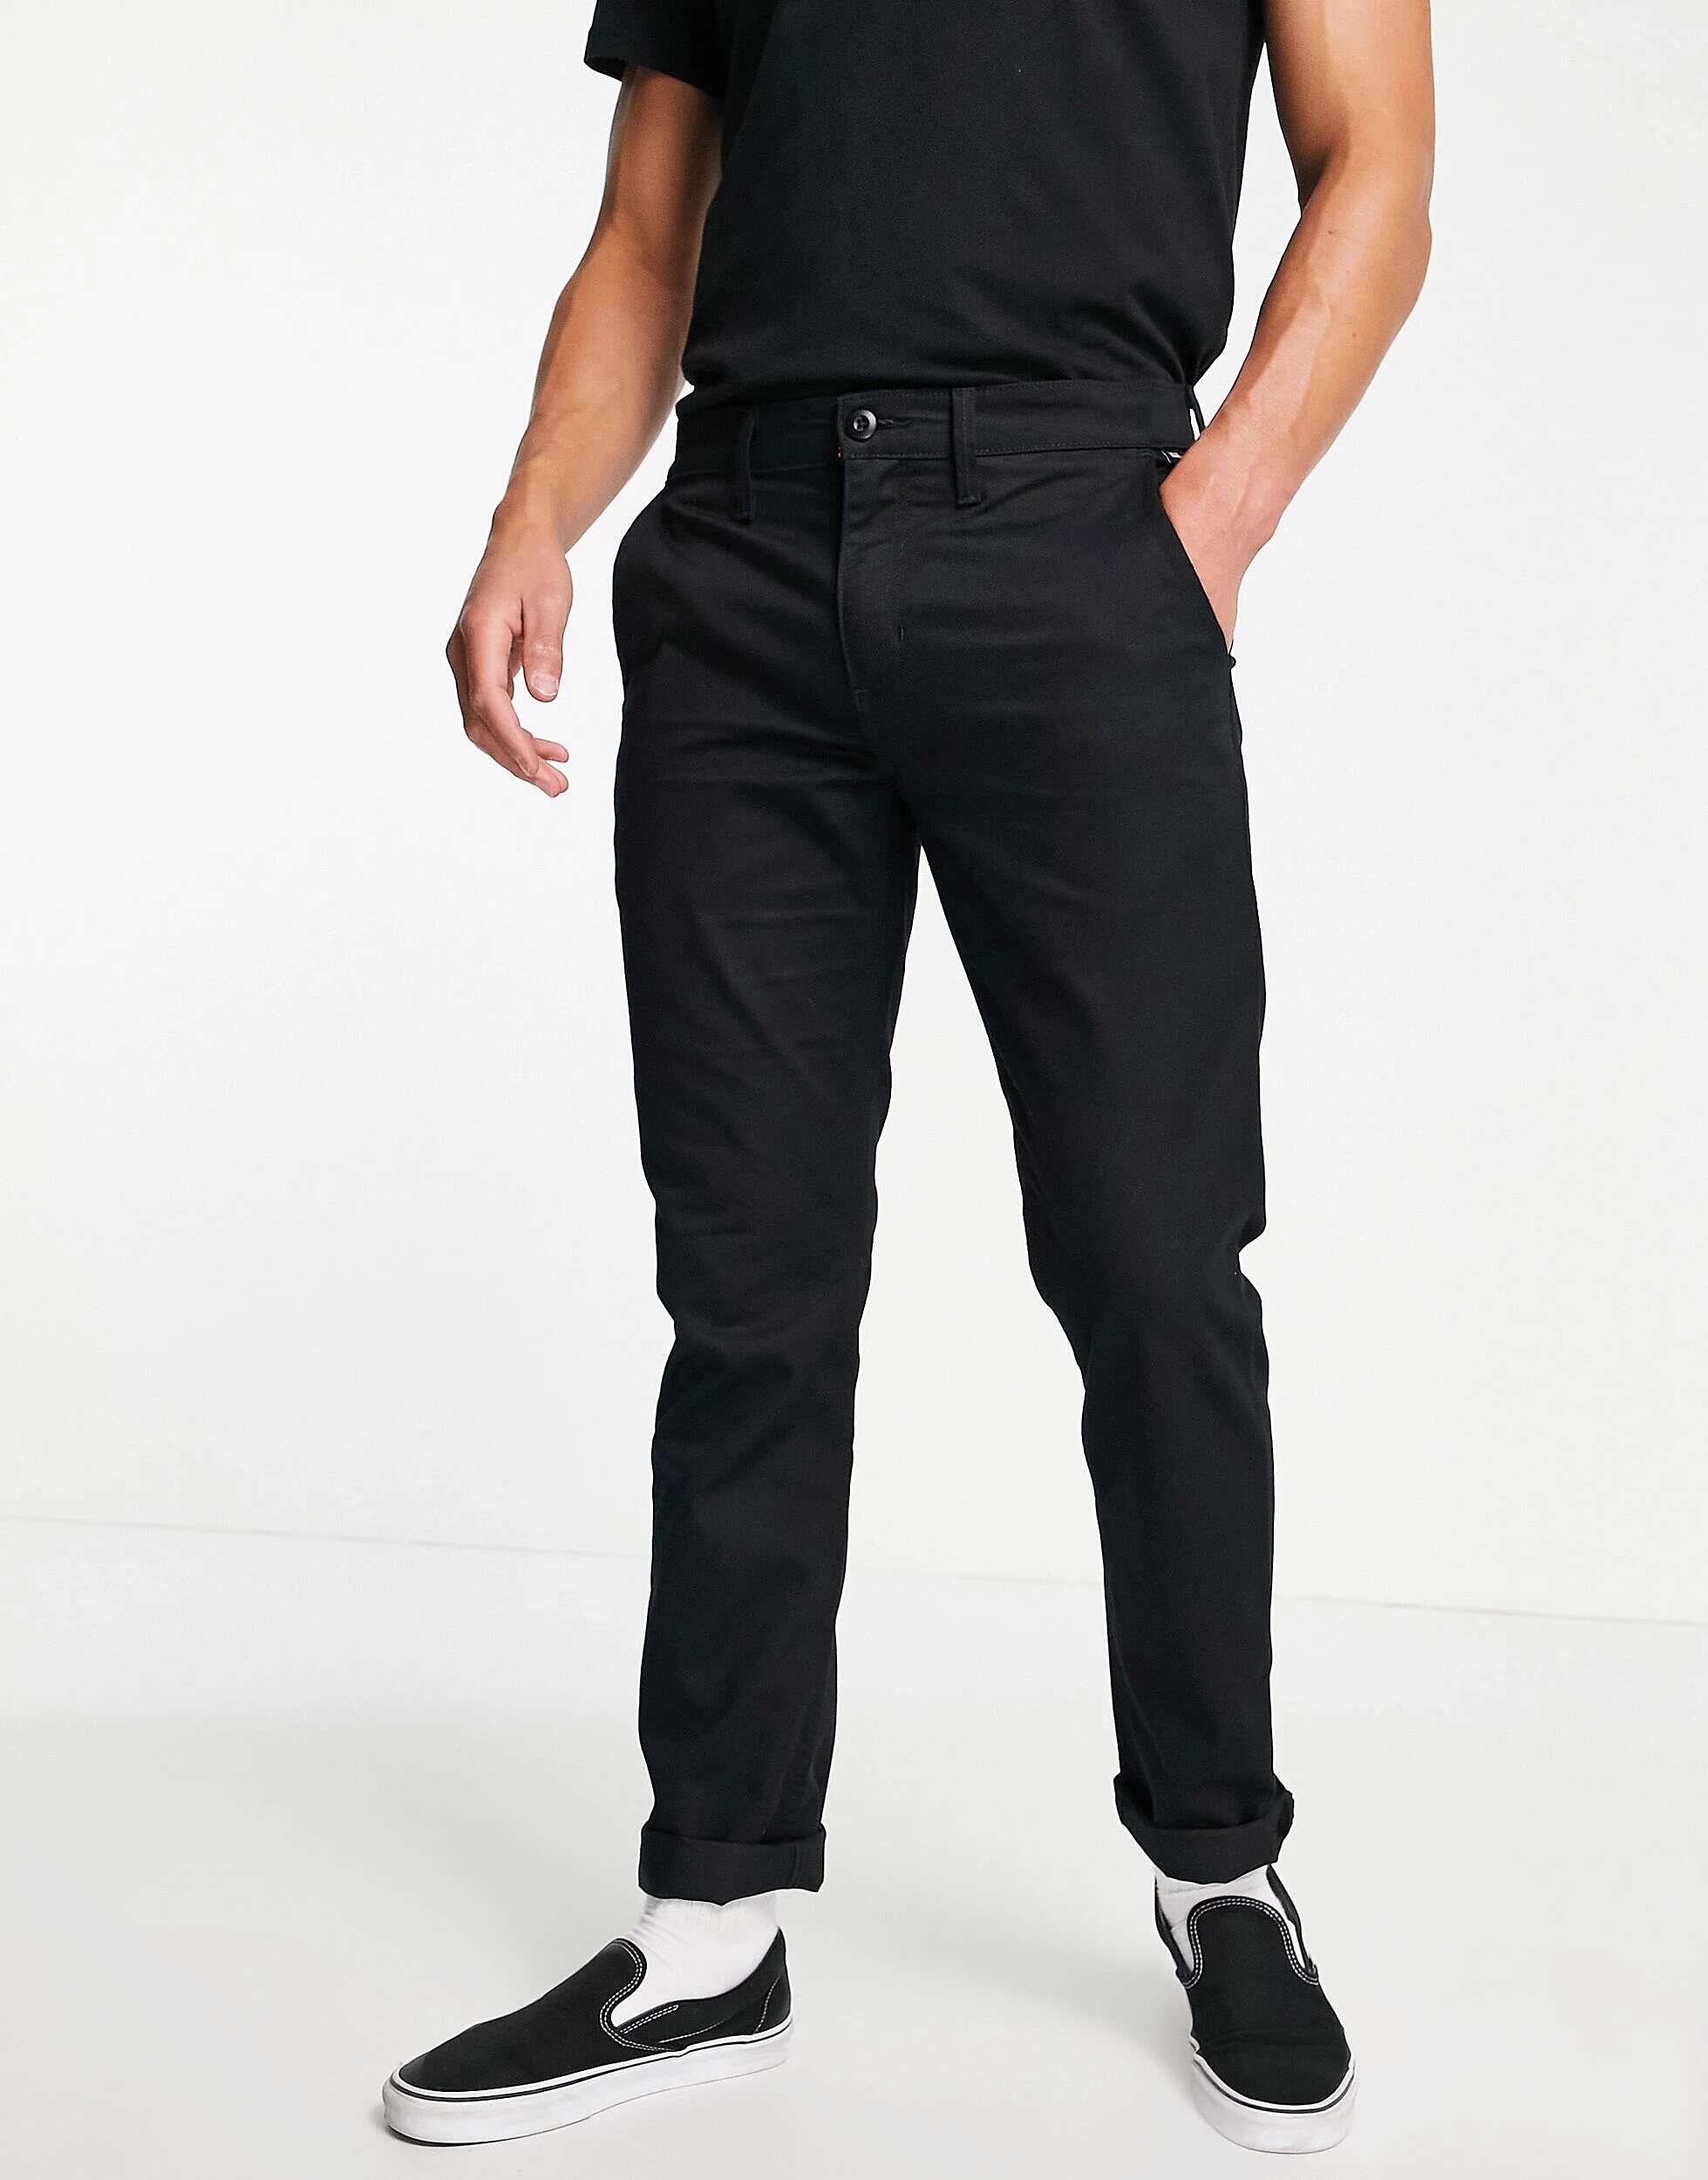 Черные брюки-чиносы узкого кроя Vans Authentic брюки чинос bianca летние повседневный стиль карманы стрейч размер 38 розовый